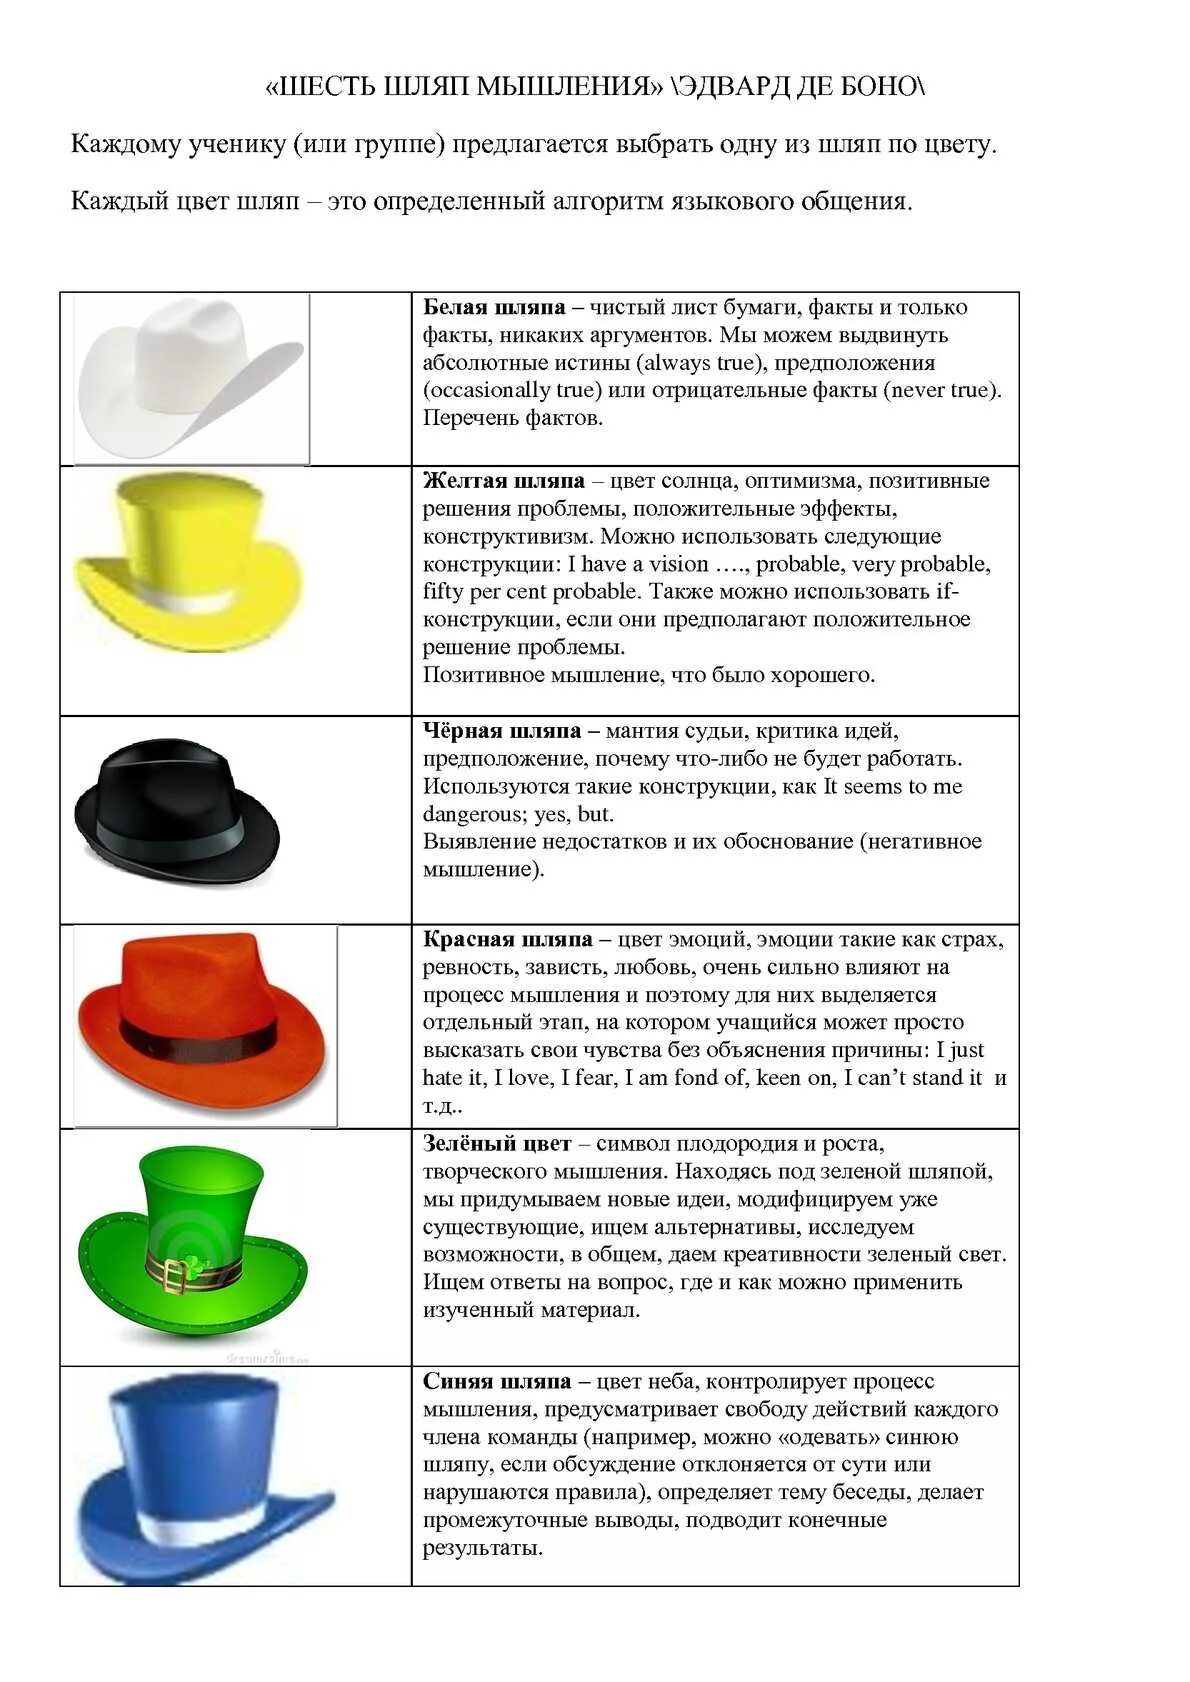 Примеры 6 шляп. Методика Боно шесть шляп мышления. Методика шести шляп Эдварда де Боно. Метод «шесть шляп мышления» Эдварда де Боно.